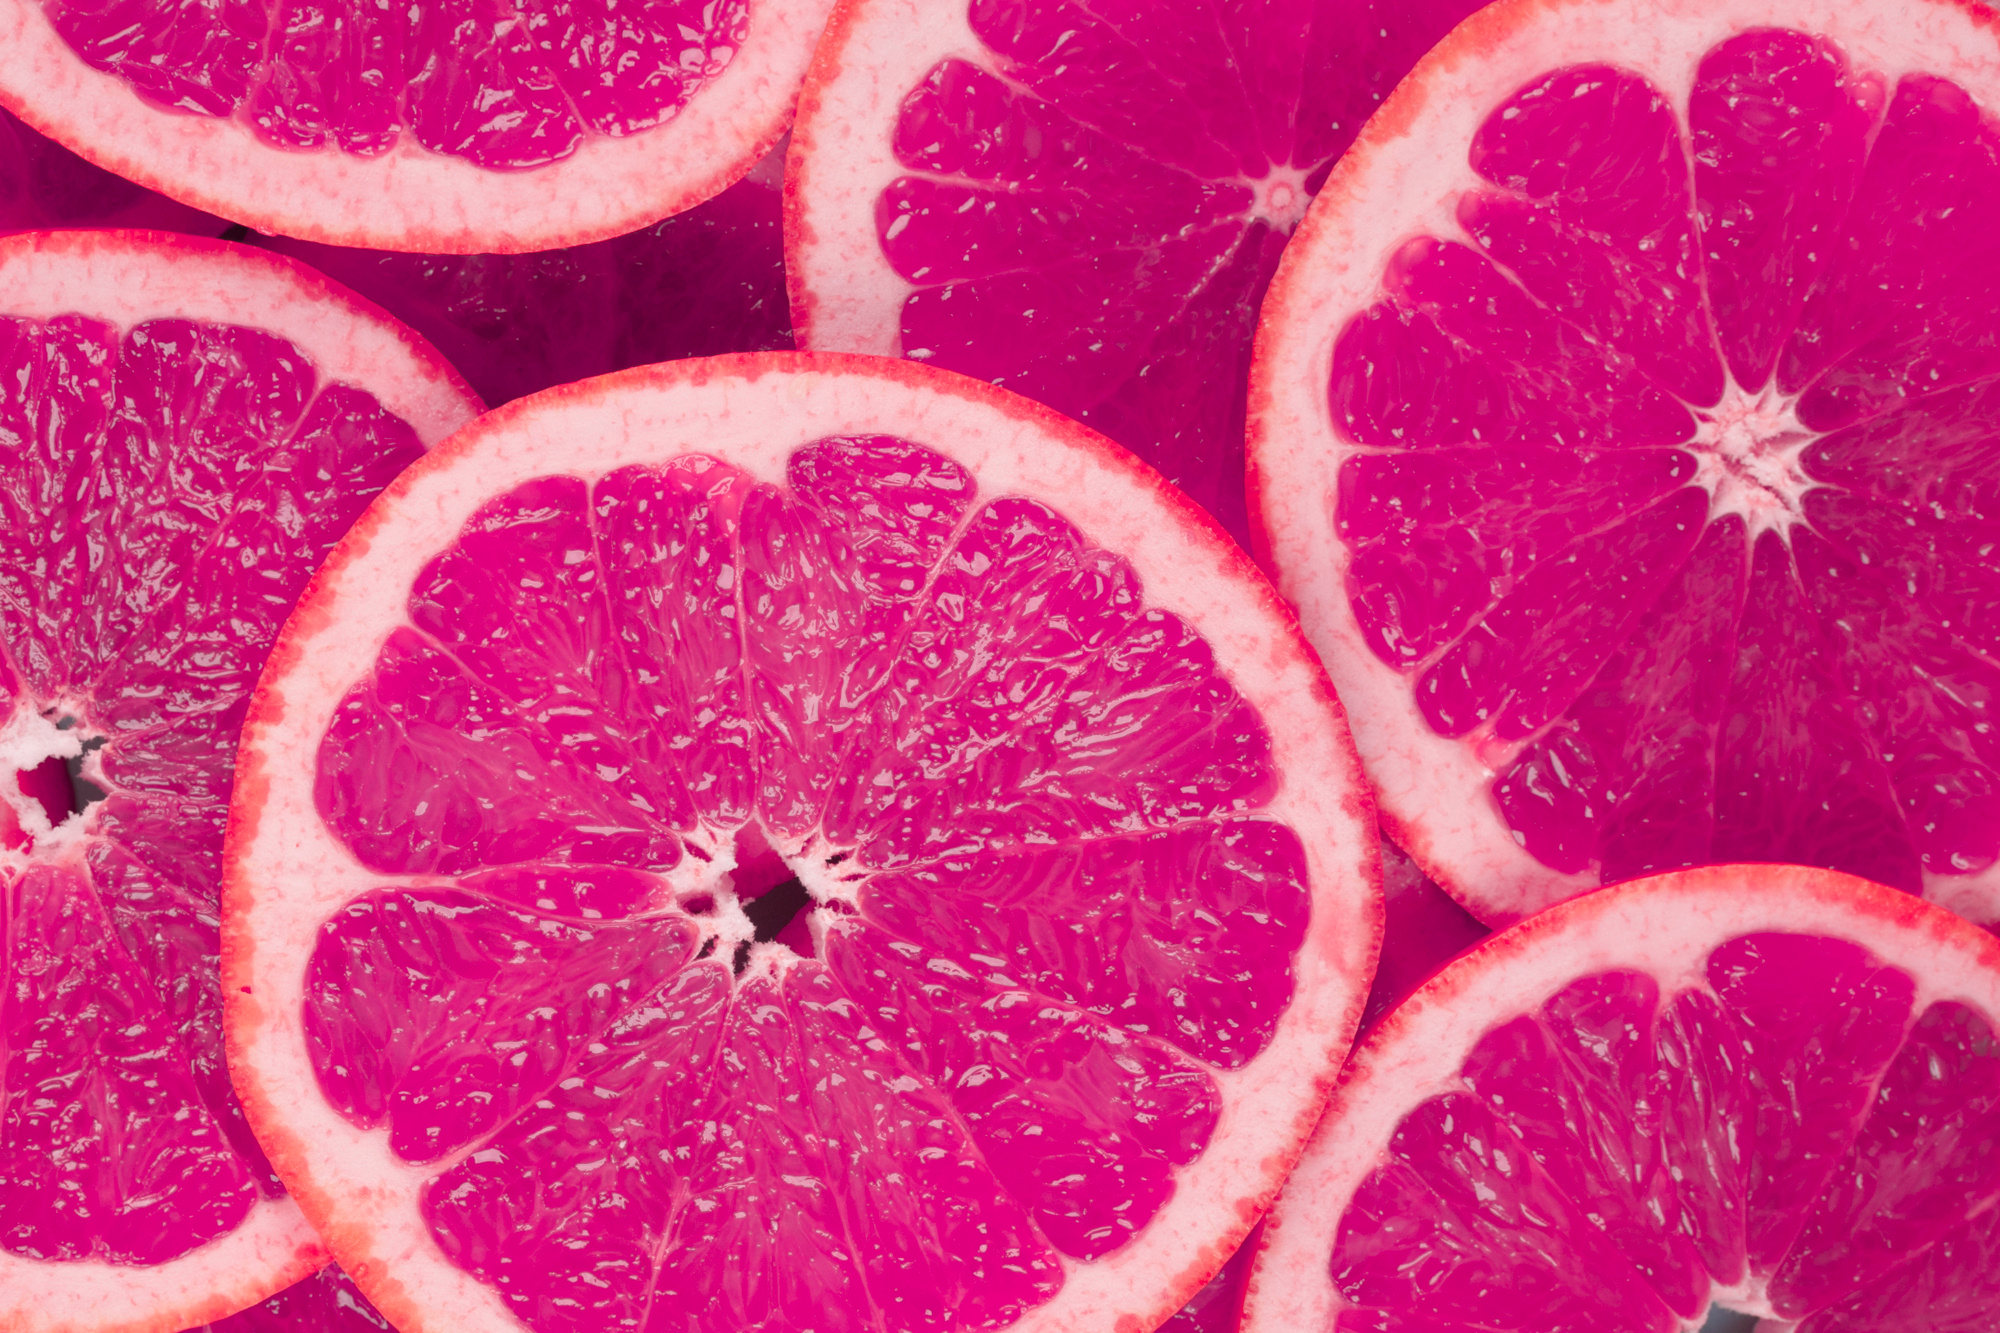 Black Label Edition: Pinke Früchte Liquid, 100ml – Der fruchtige Genuss